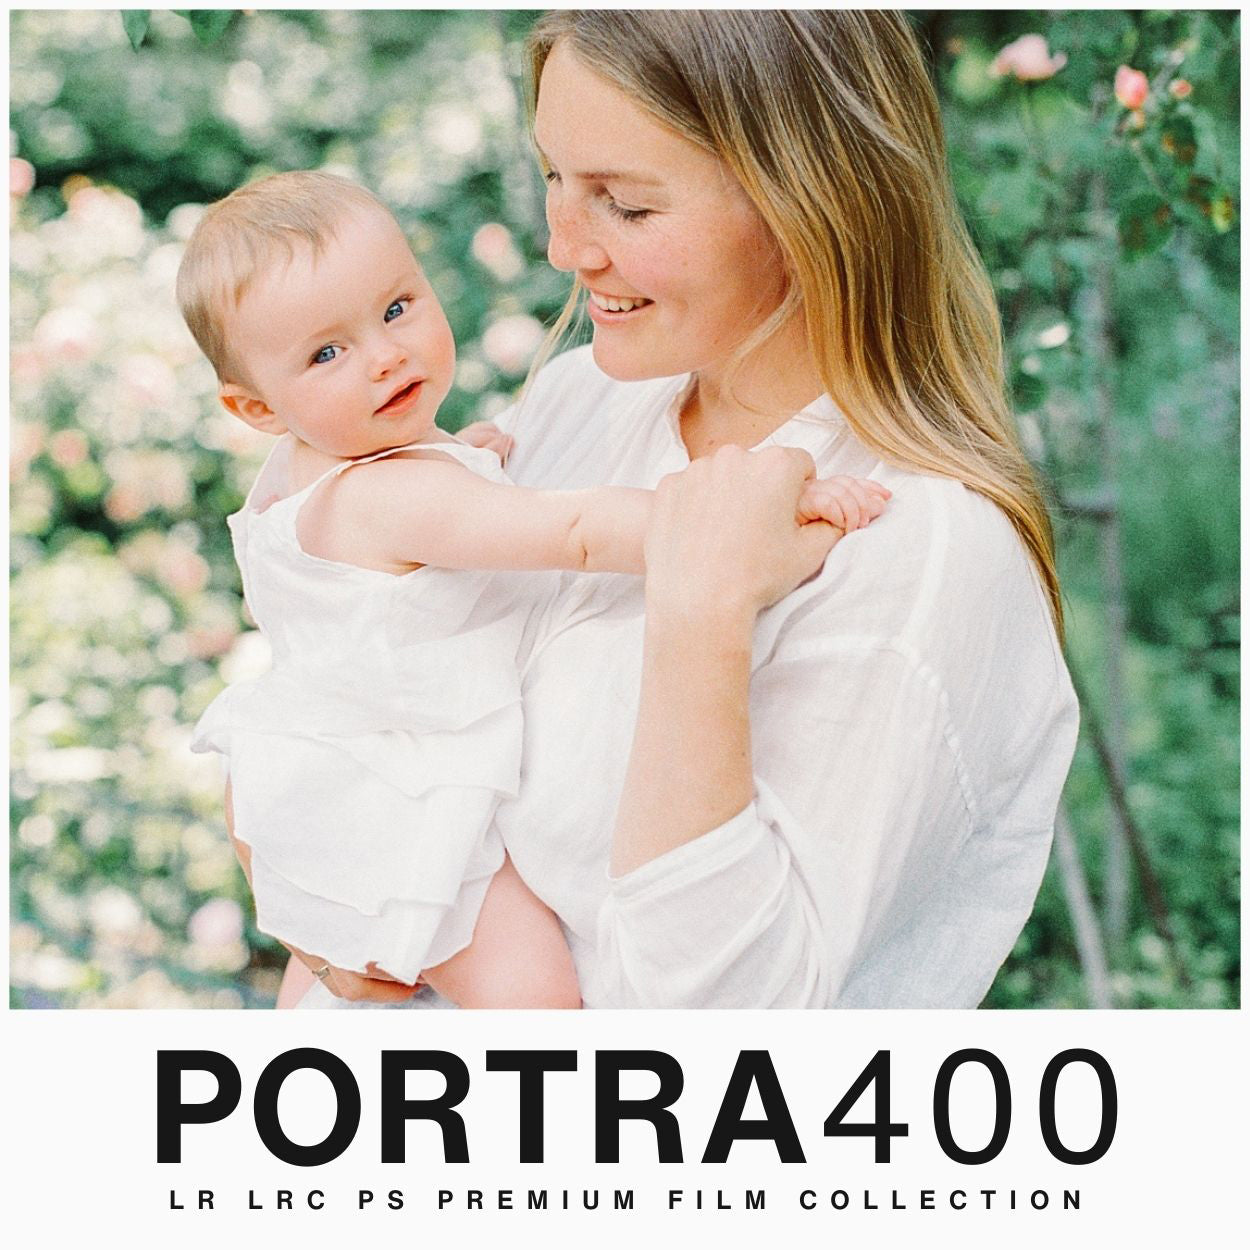 Kodak Portra 400 Film Filter Lightroom Presets For Adobe Lightroom Mobile & Desktop By Lou And Marks Presets film